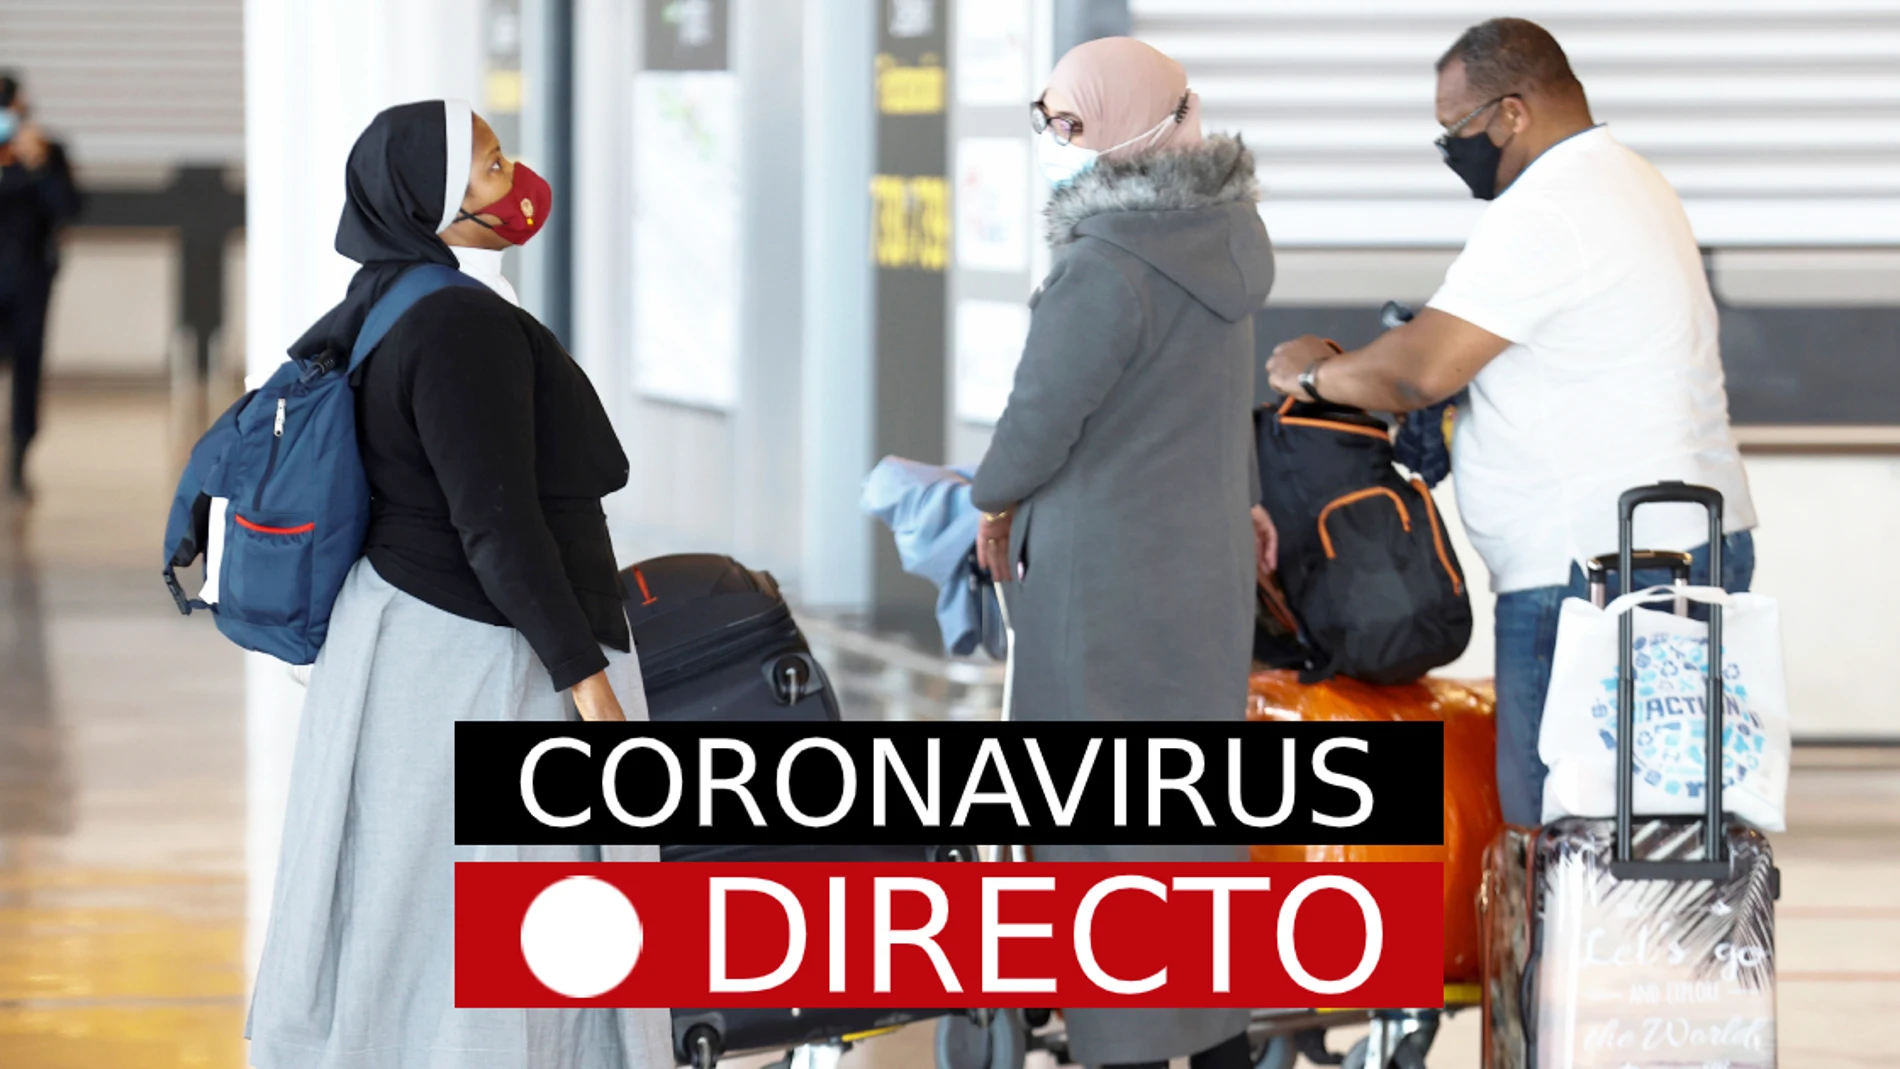 Última hora: vacunación en España, medidas y restricciones por coronavirus, hoy | Incidencia en Madrid y resto de CCAA